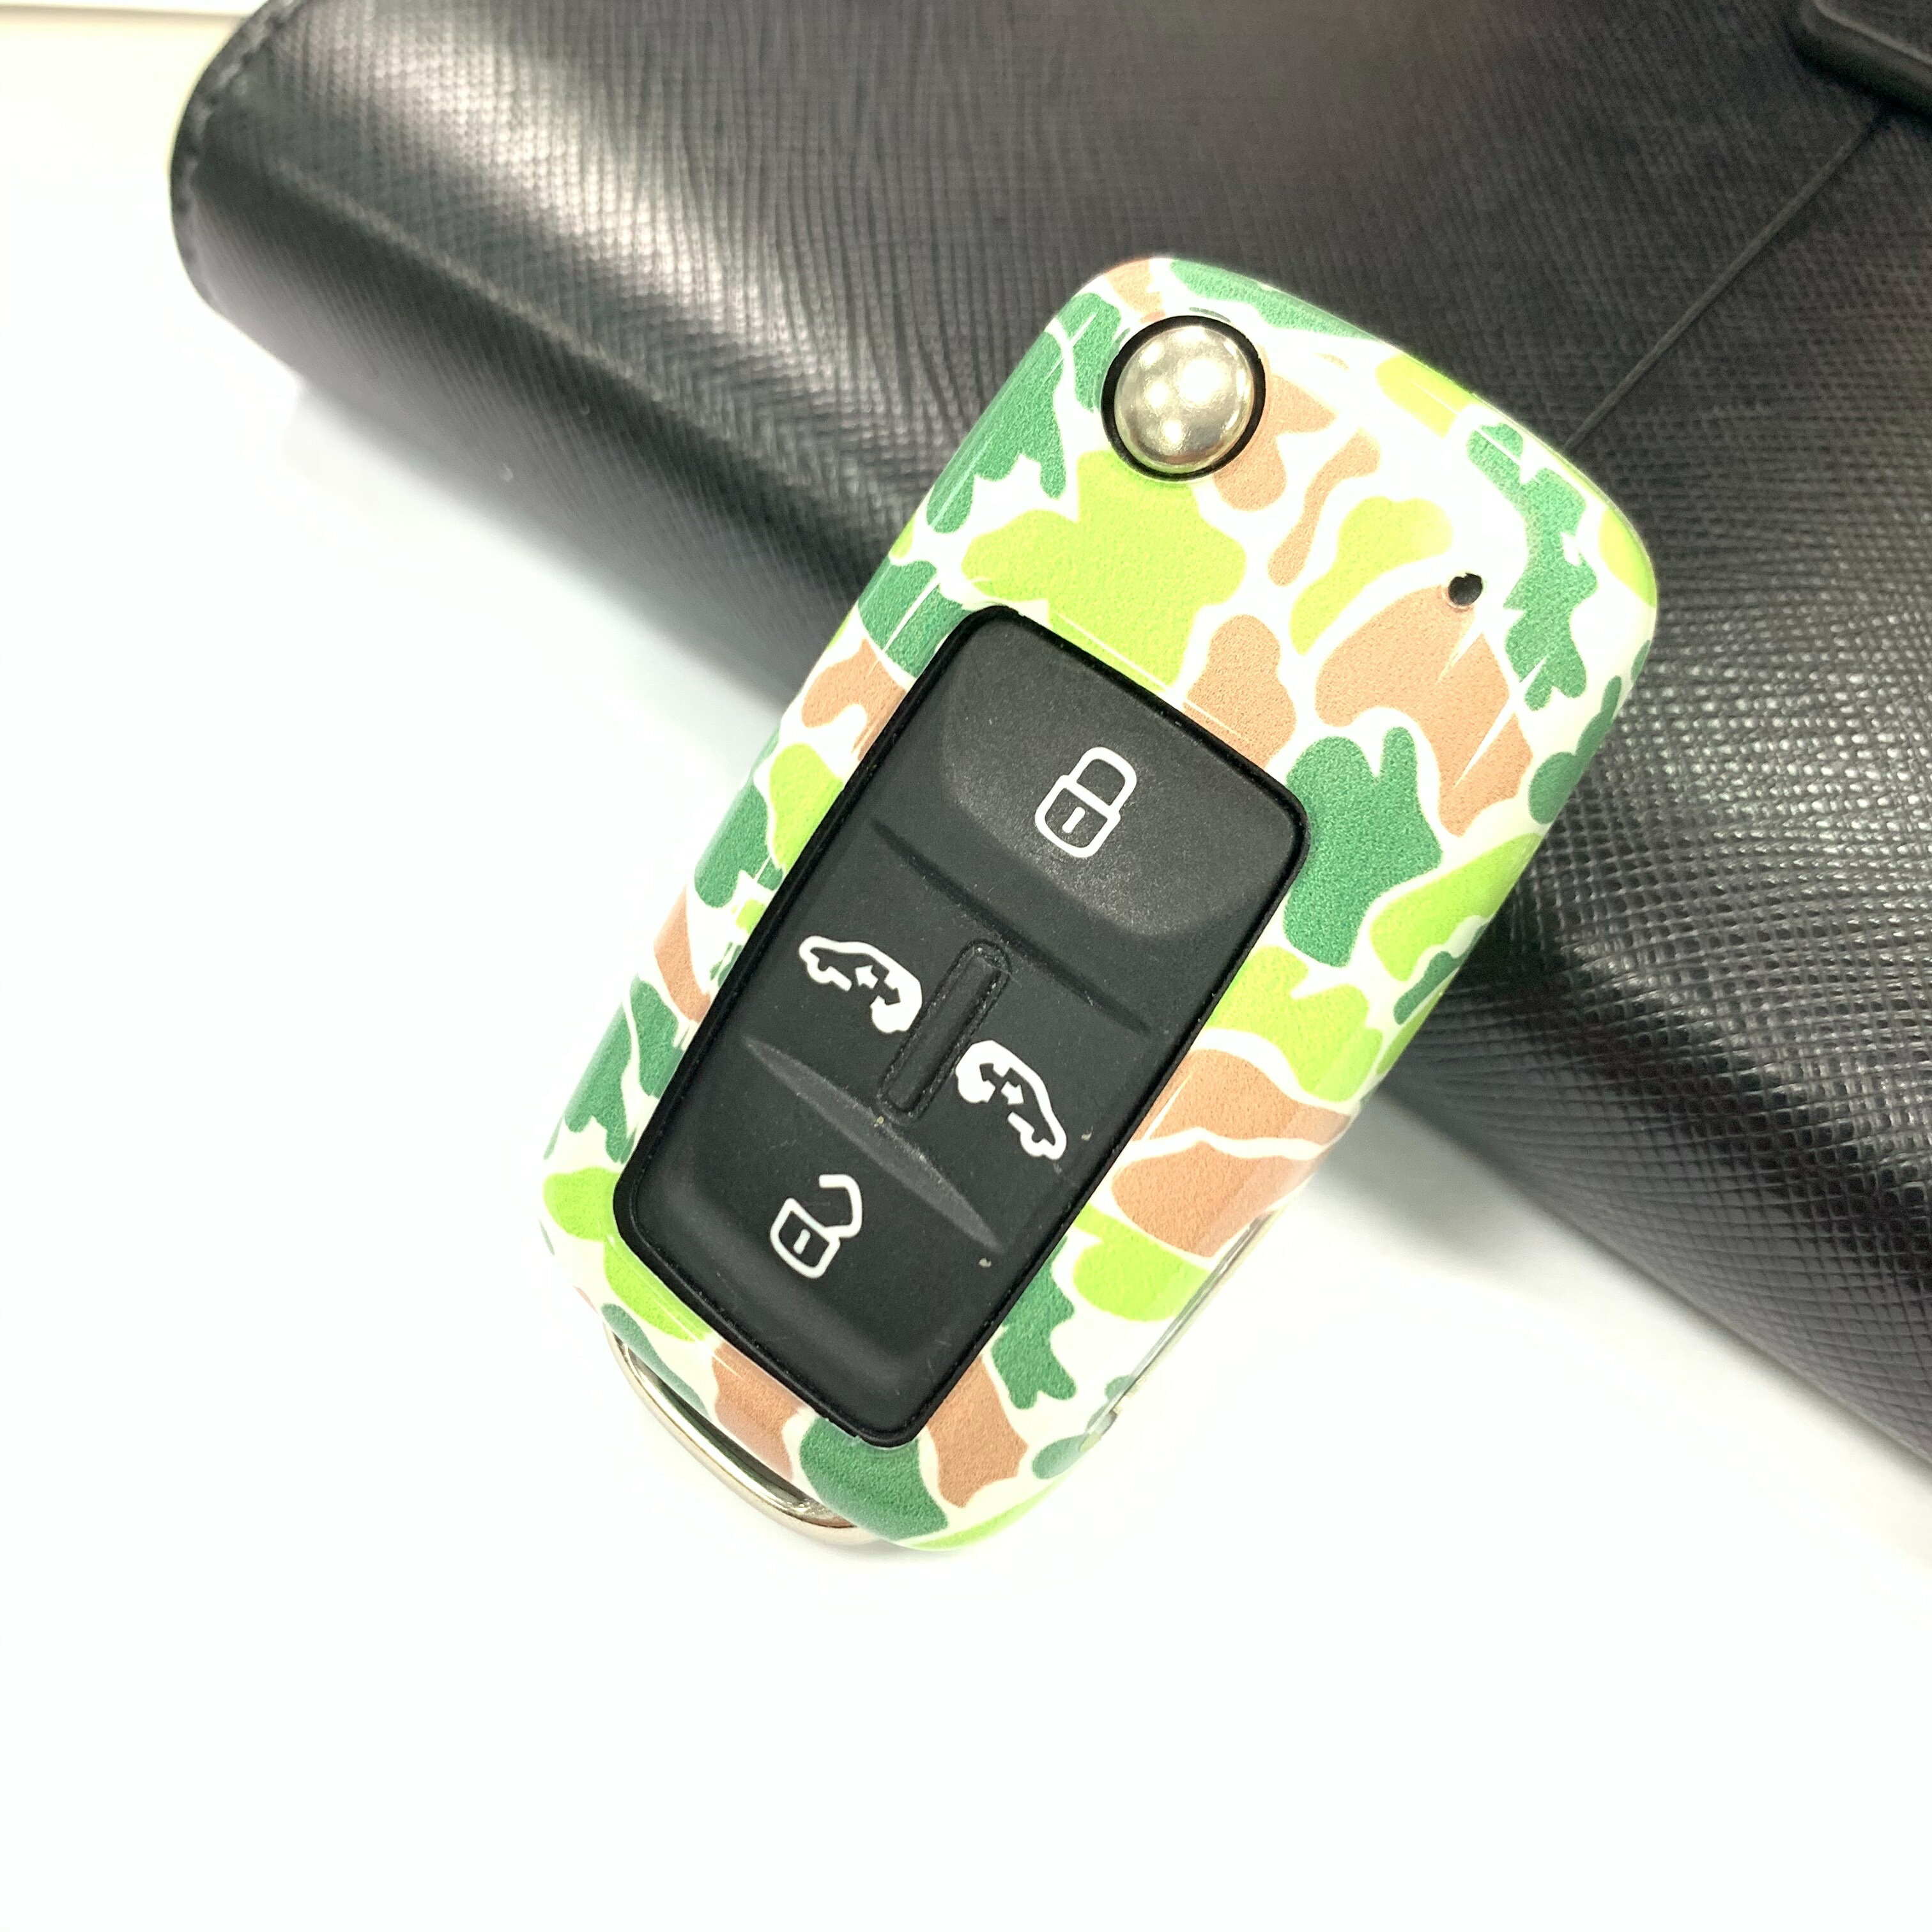 日本知名品牌 SECOND STAGE 專屬於VOLKSWAGEN SWITCH款汽車鑰匙保護殼(五色可選) 個性鑰匙套 鑰匙保護包